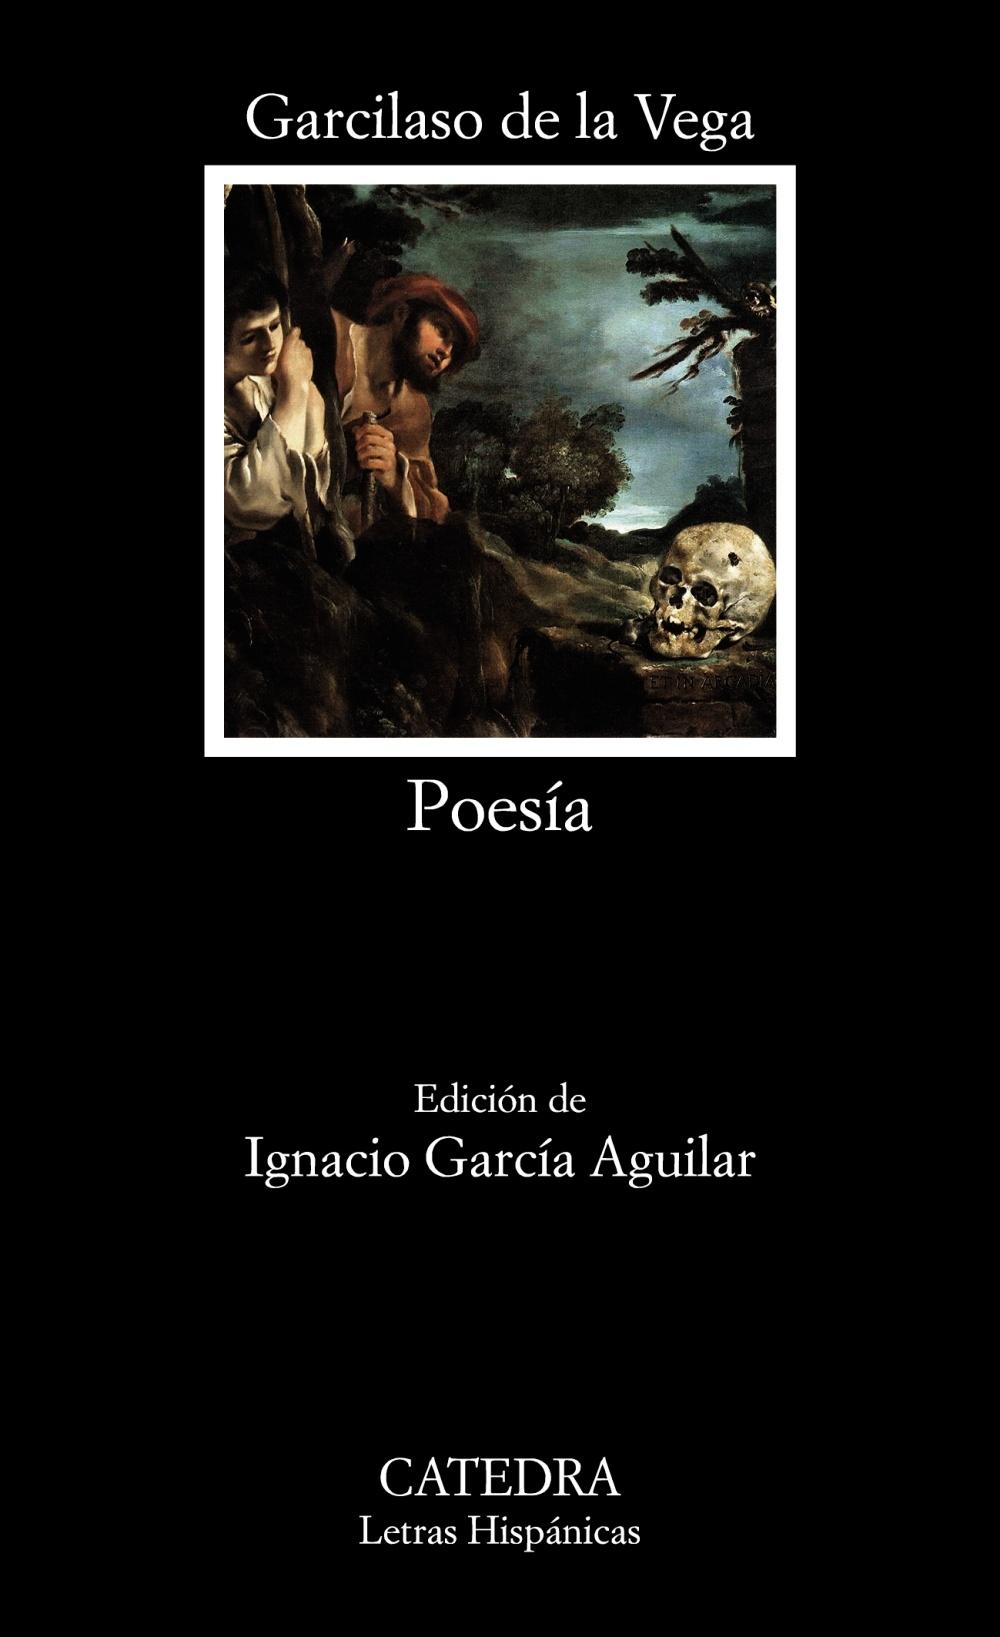 Poesía "(Garcilaso de la Vega)". 